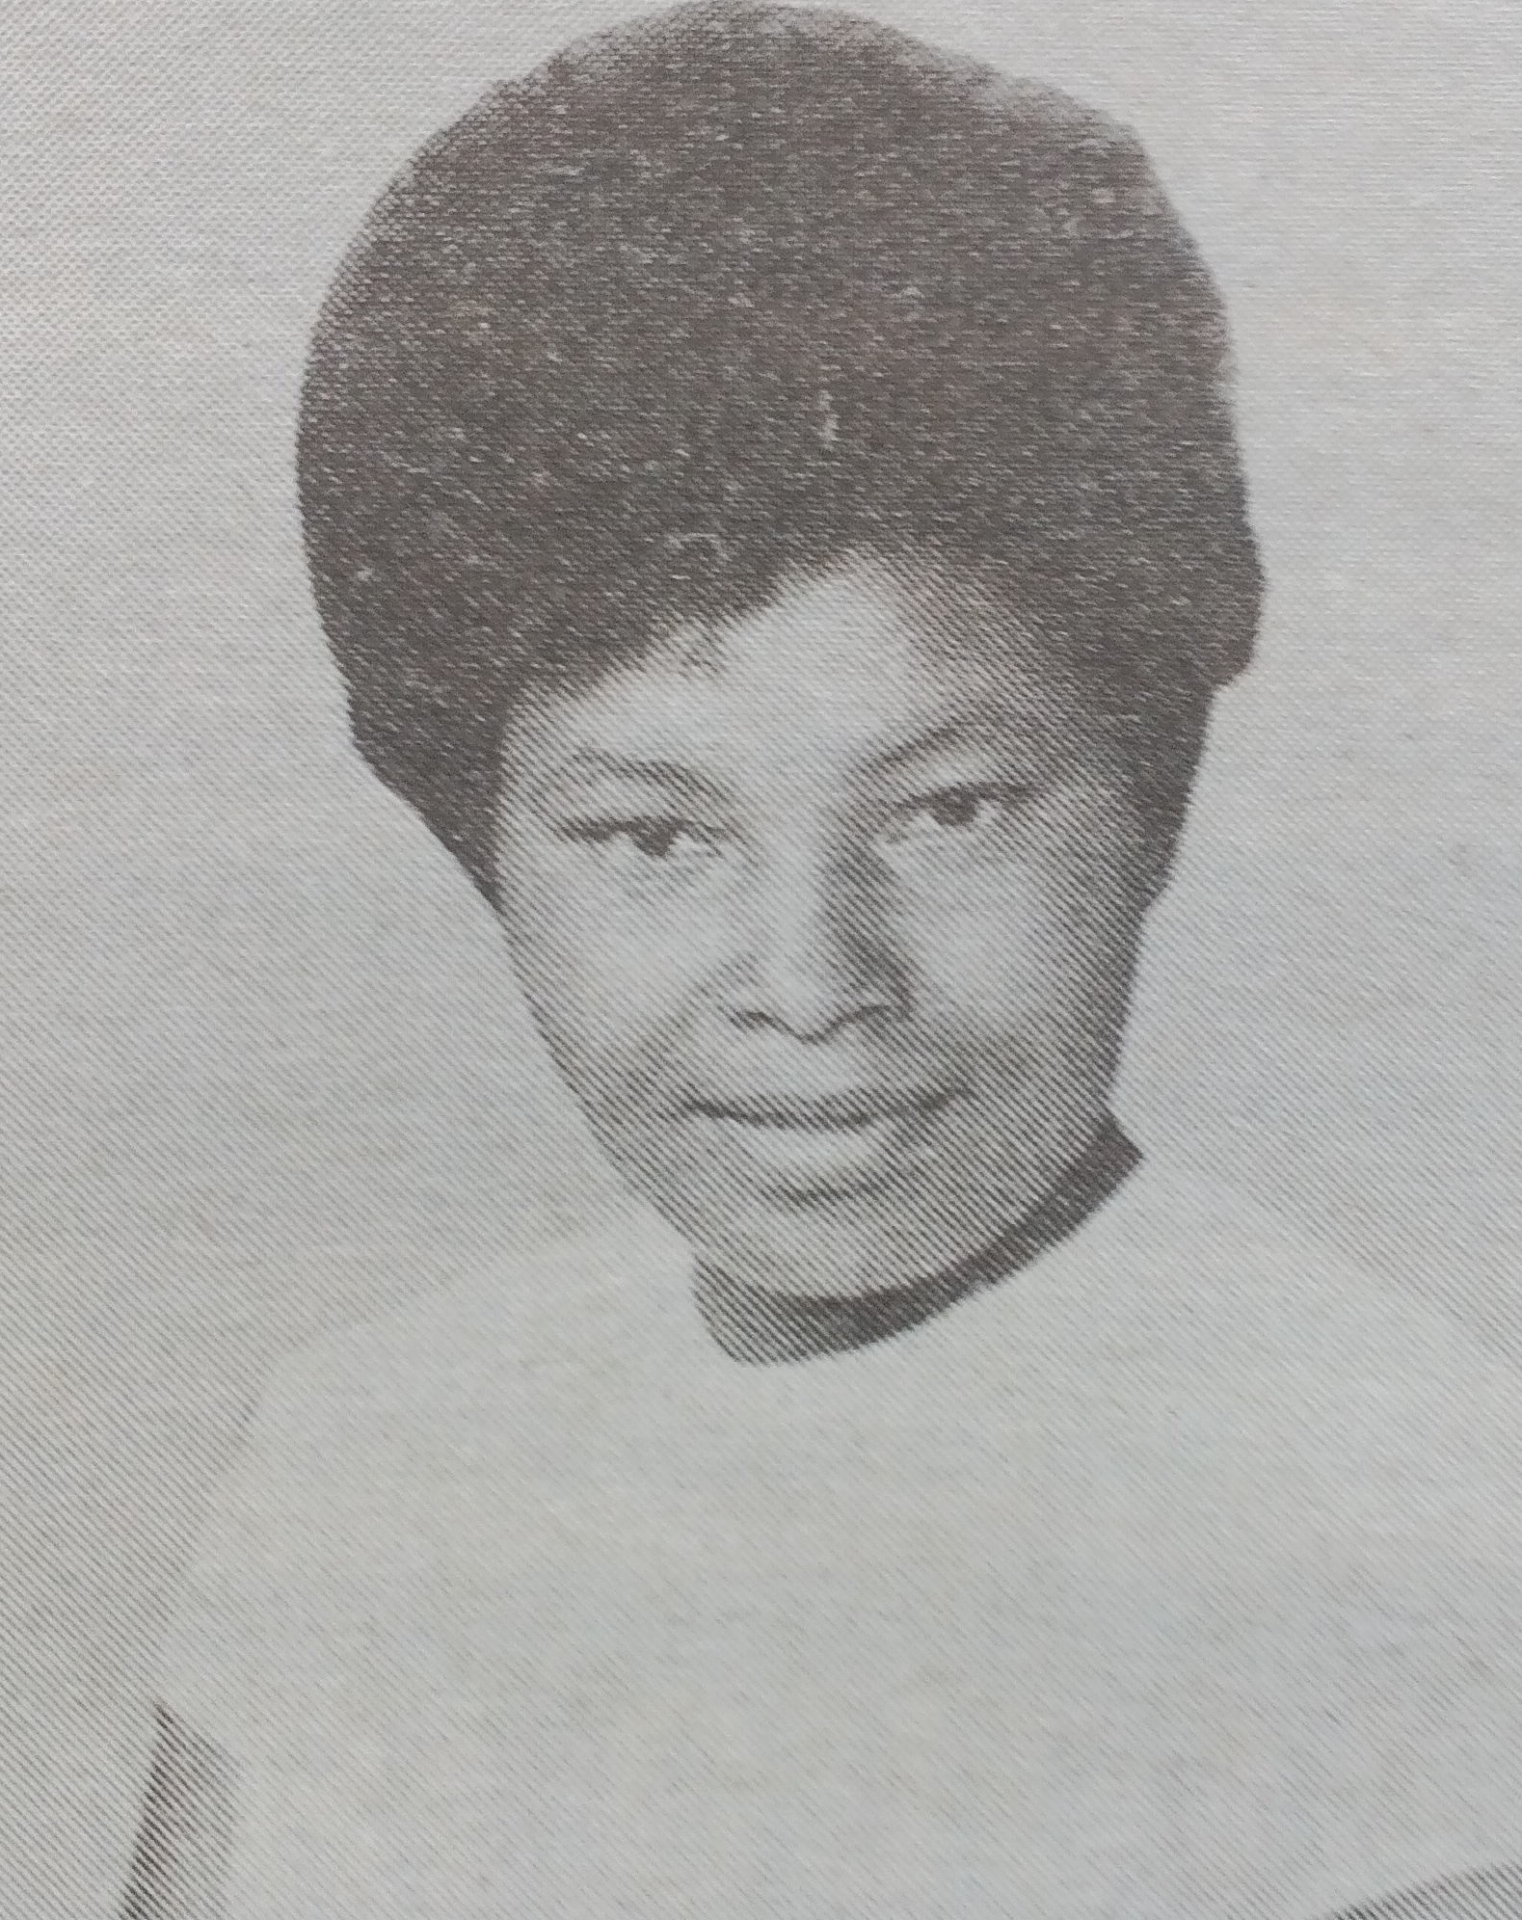 Obituary Image of Agnes Nzilani Kakenyi